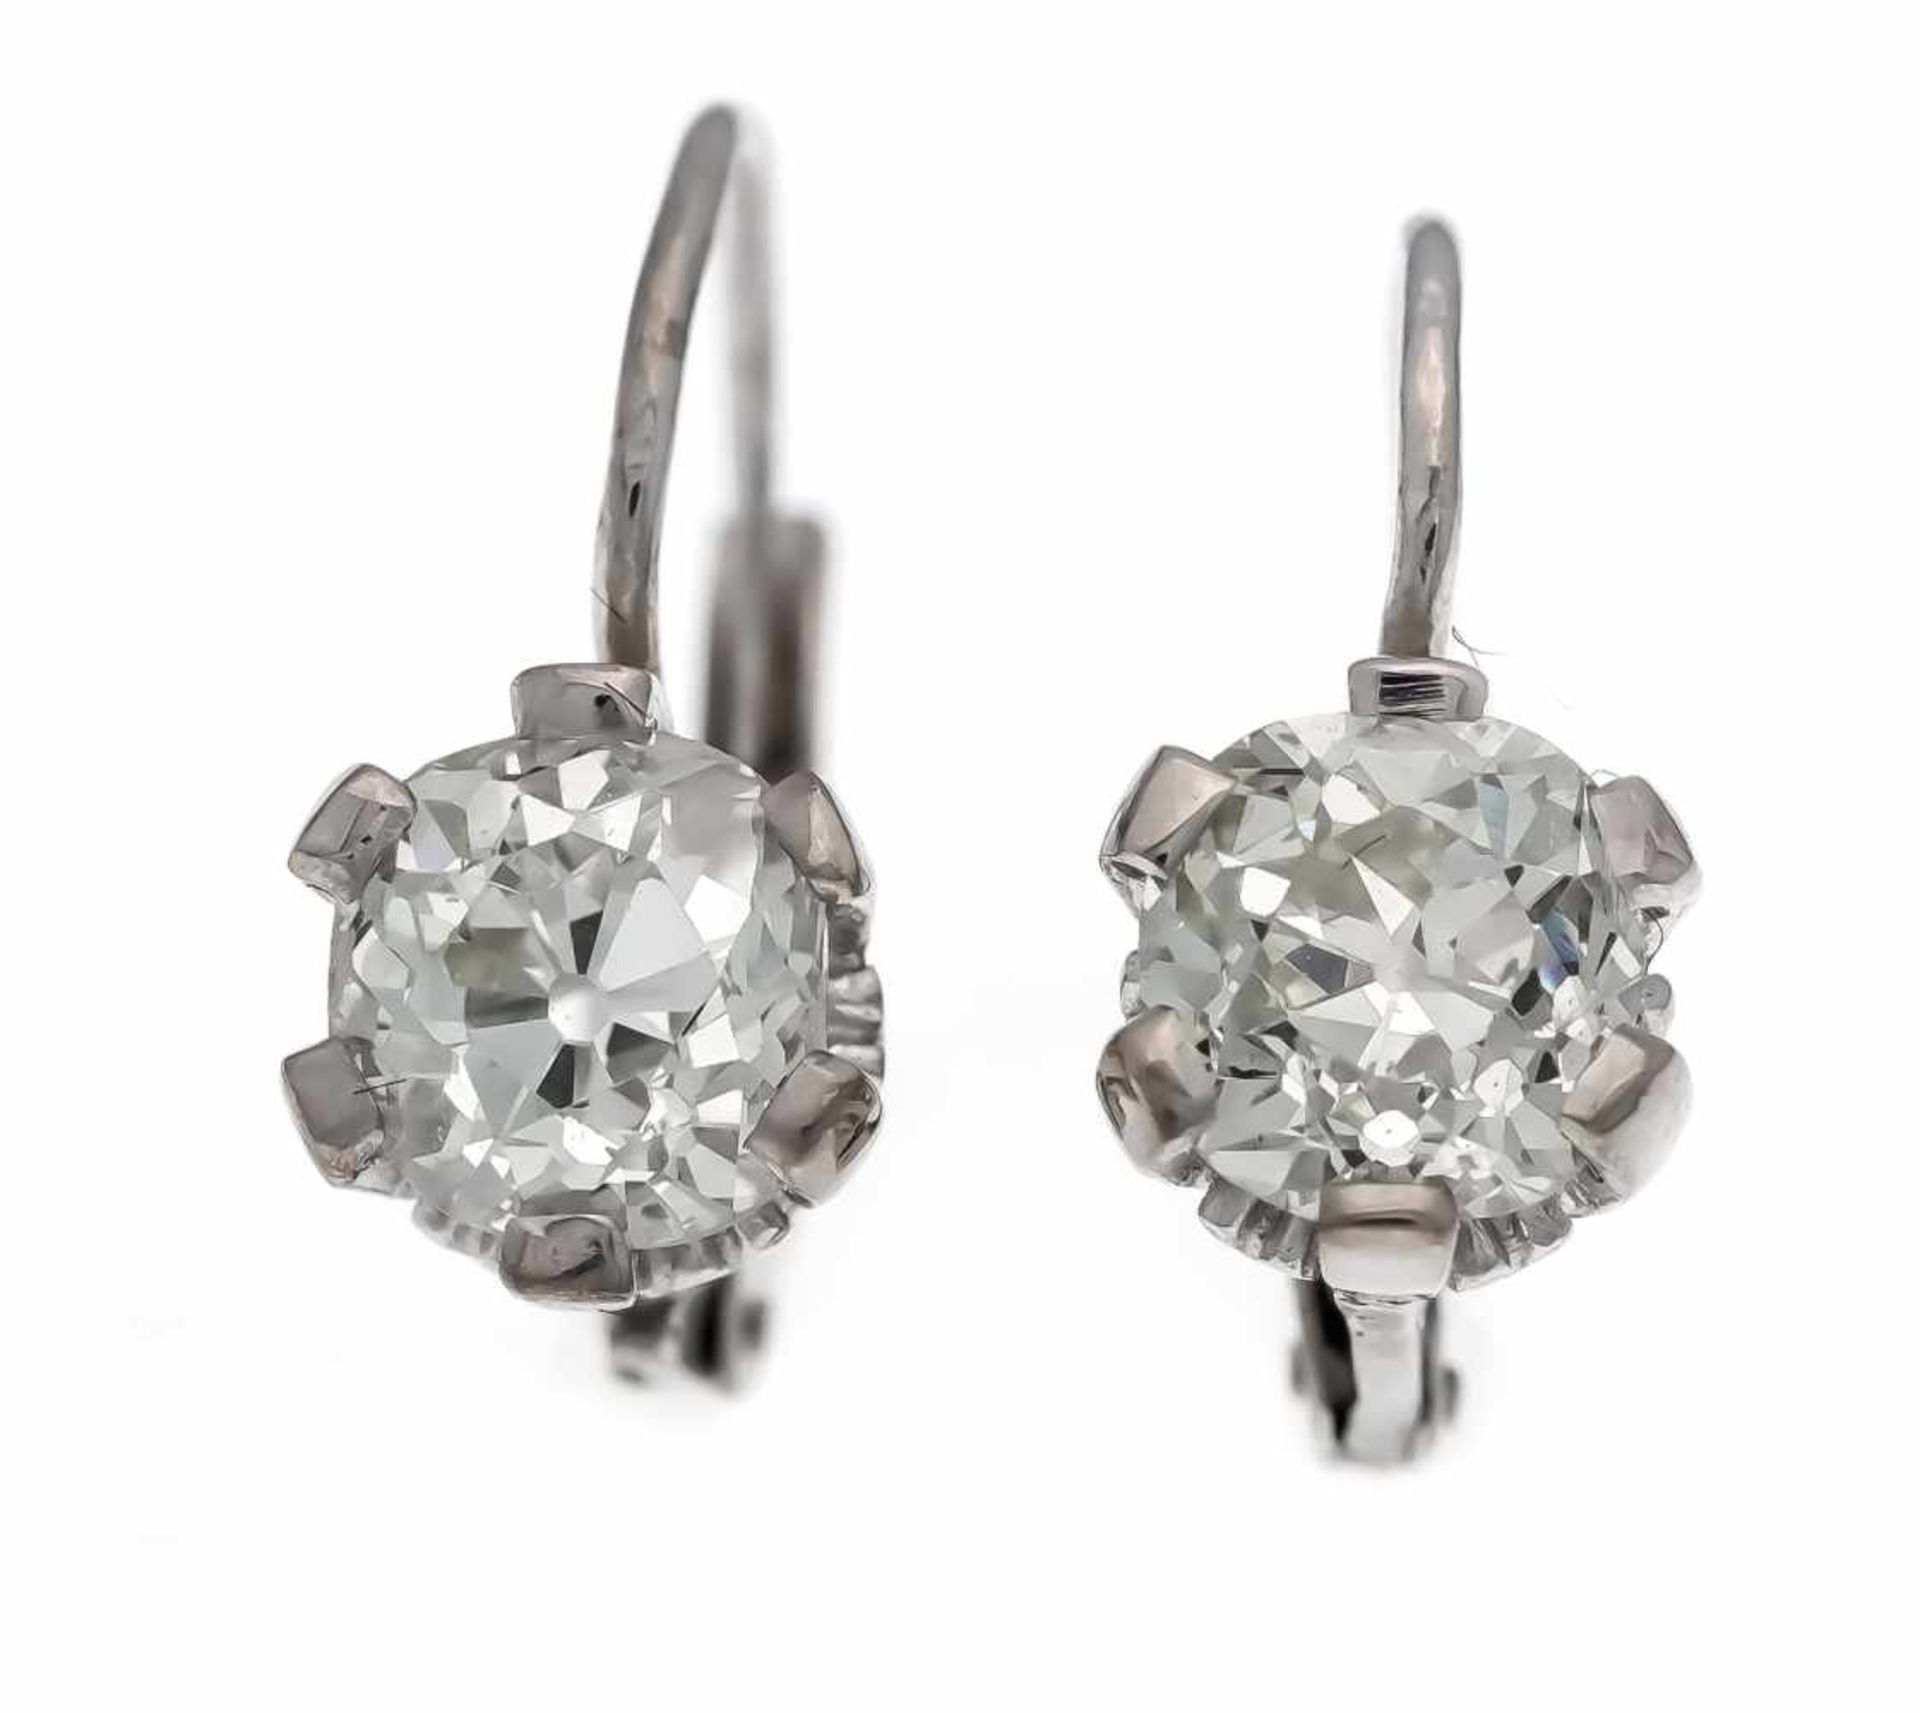 Altschliff-Diamant-Ohrringe WG 750/000 mit 2 Altschliff-Diamanten, zus. 2,20 ct l.get.W -get.W (J-